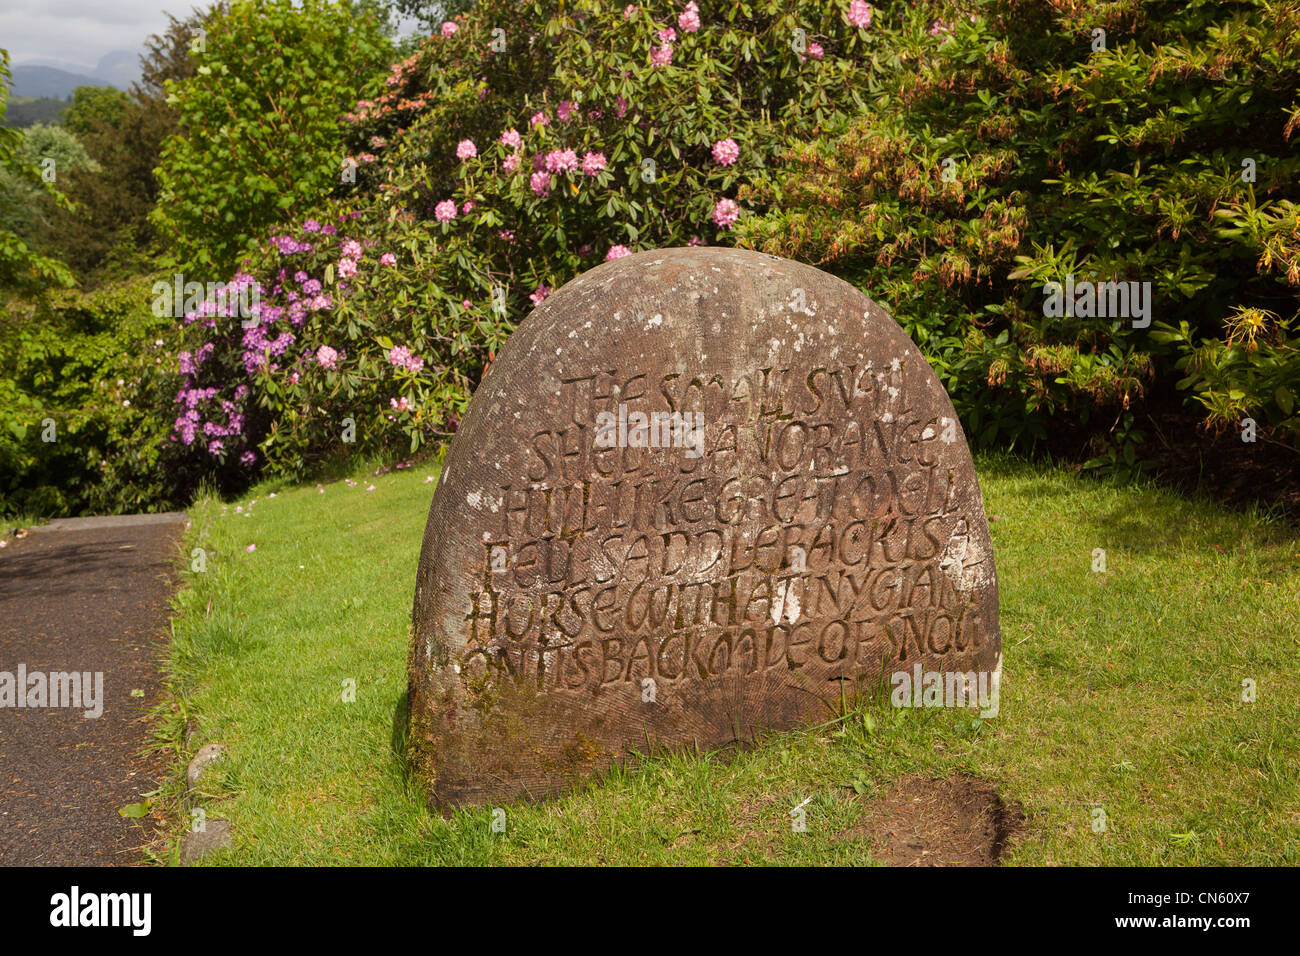 UK, Cumbria, Ambleside, petit jardin, At Brockhole coquille d'escargot de la sculpture sur pierre avec des mots inscrits Banque D'Images